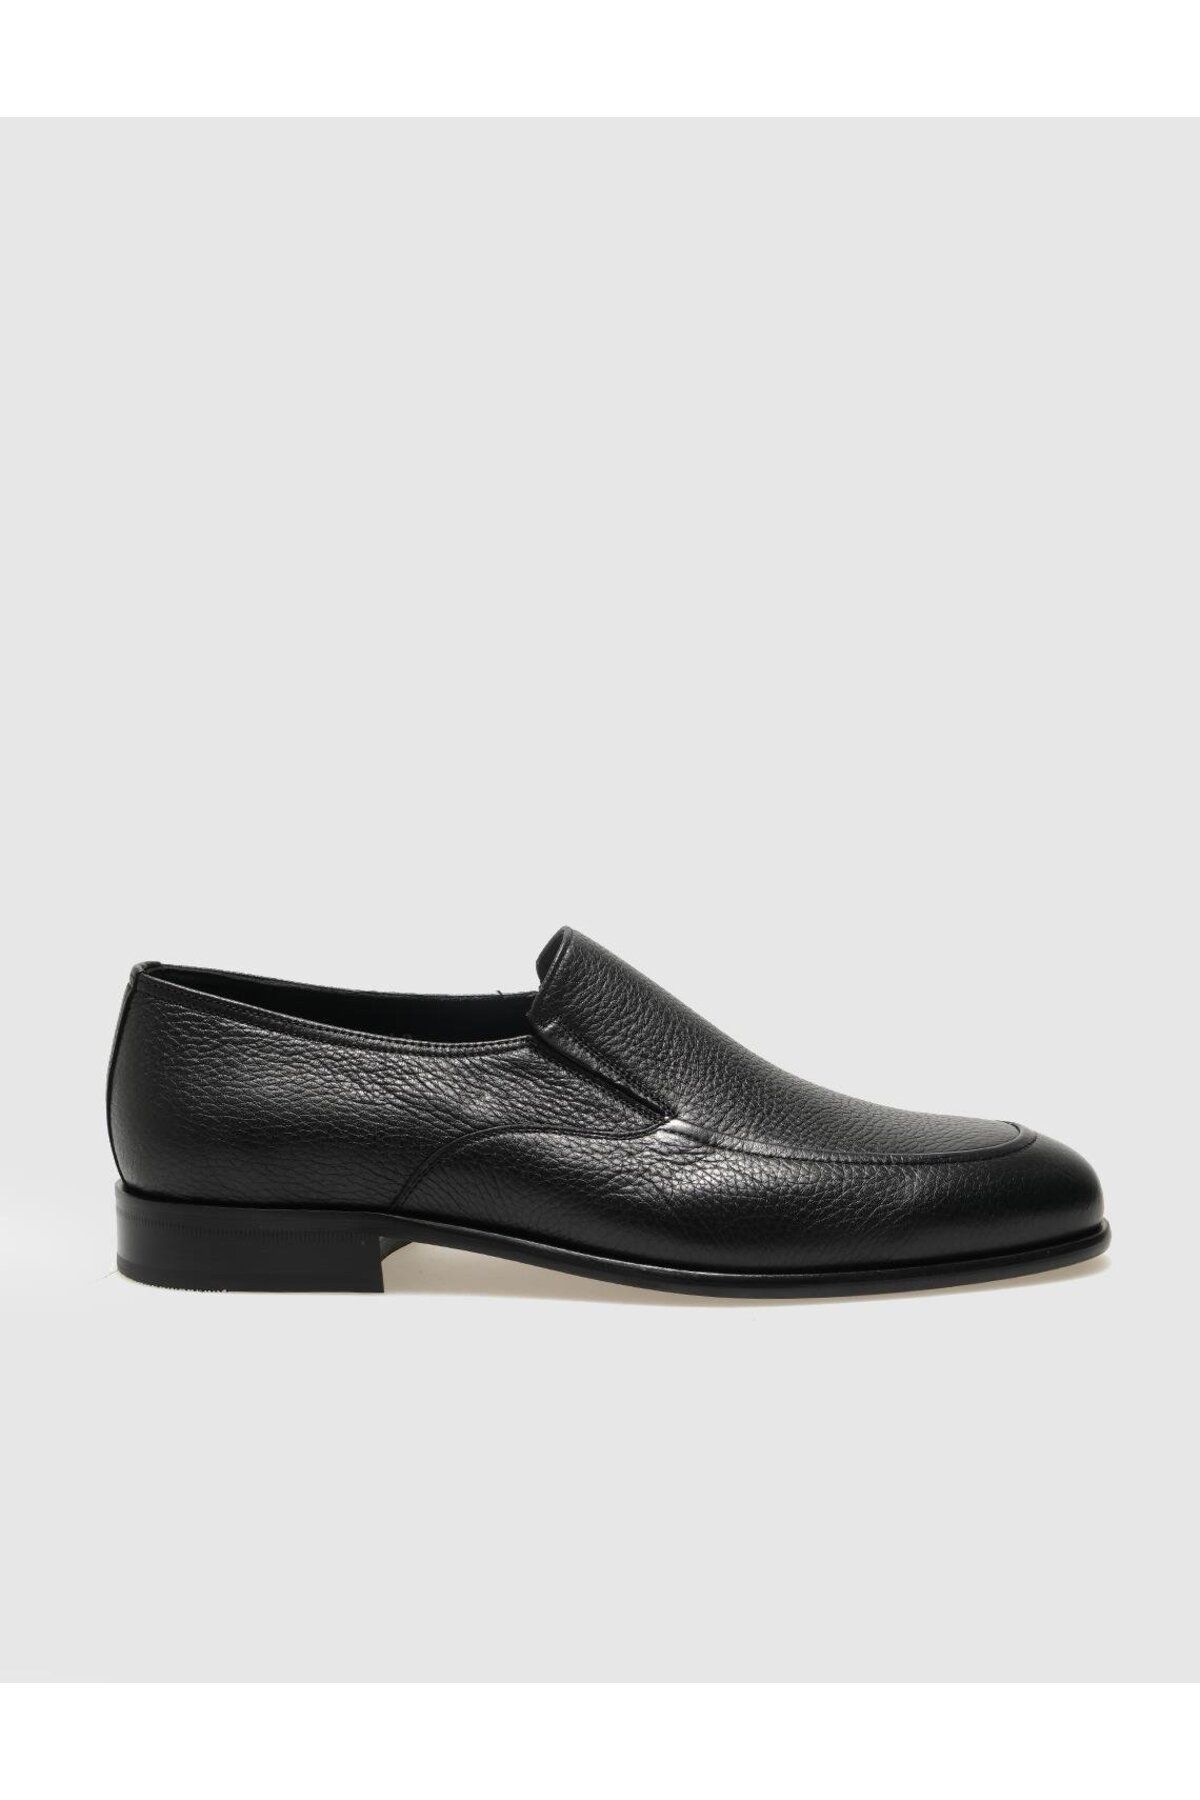 Cabani کفش های کلاسیک مردانه سیاه چرمی واقعی